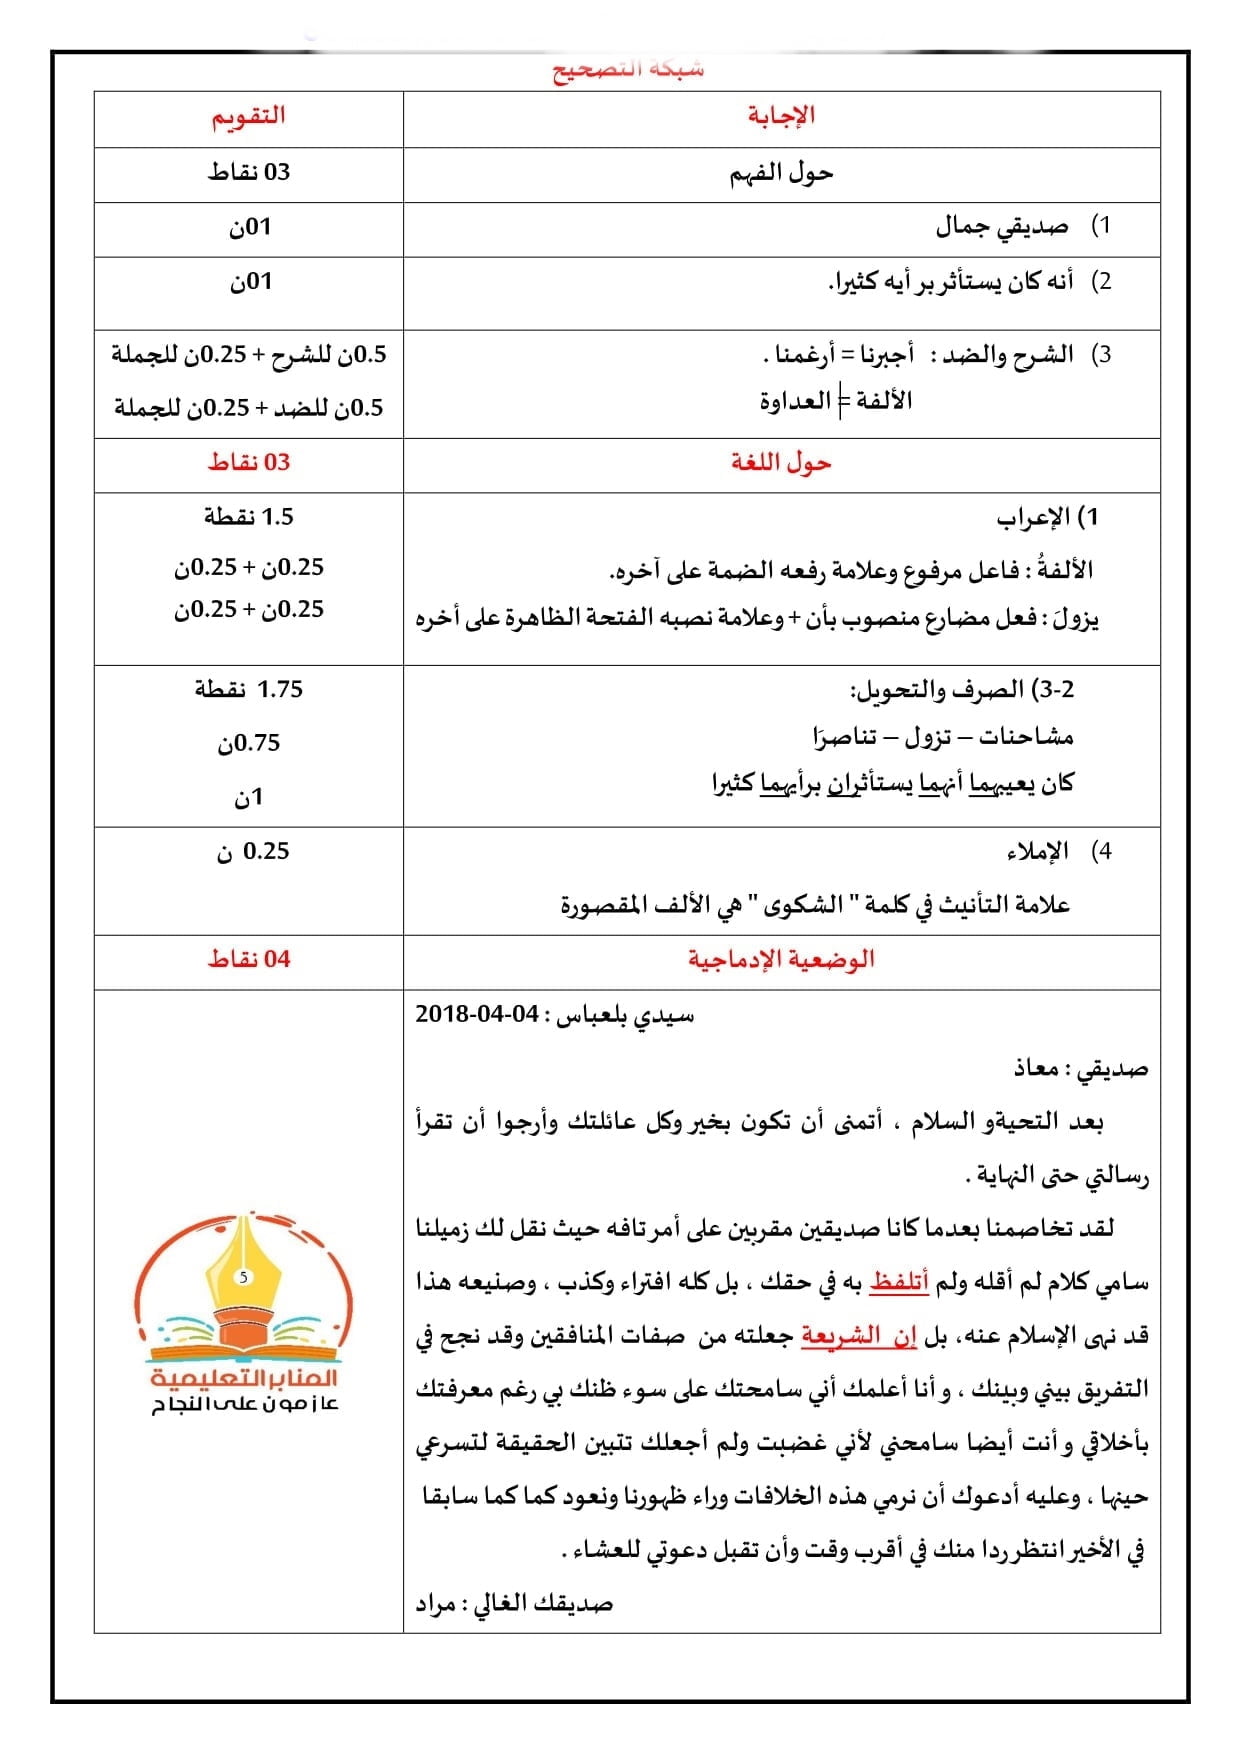 الامتحان التجريبي رقم 8 مع الاجابة في اللغة العربية لشهادة التعليم الابتدائي 2021 2